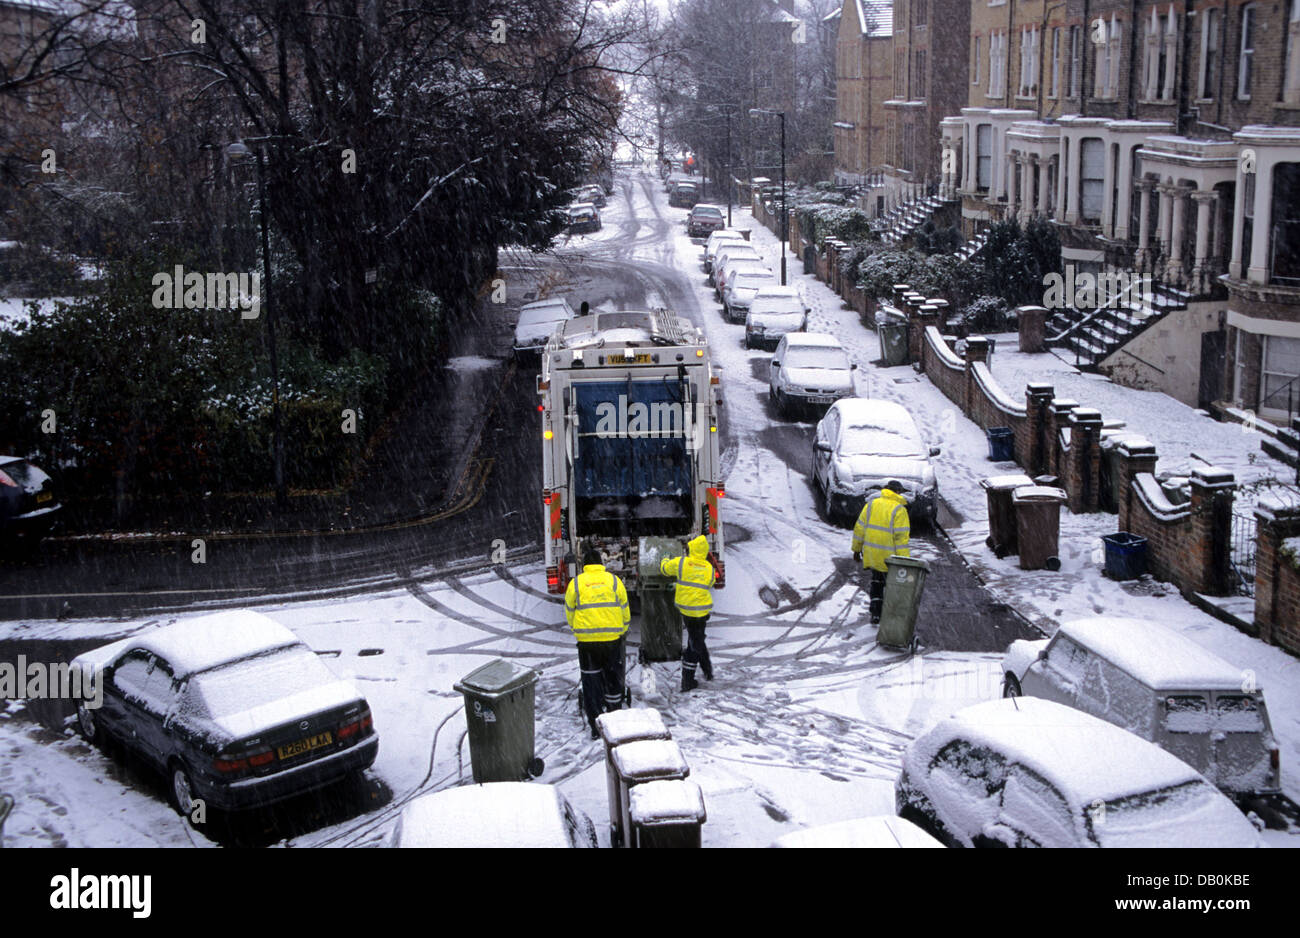 Raccolta rifiuti con bidoni in una strada suburbana nevosa di Londra in inverno, Inghilterra Foto Stock